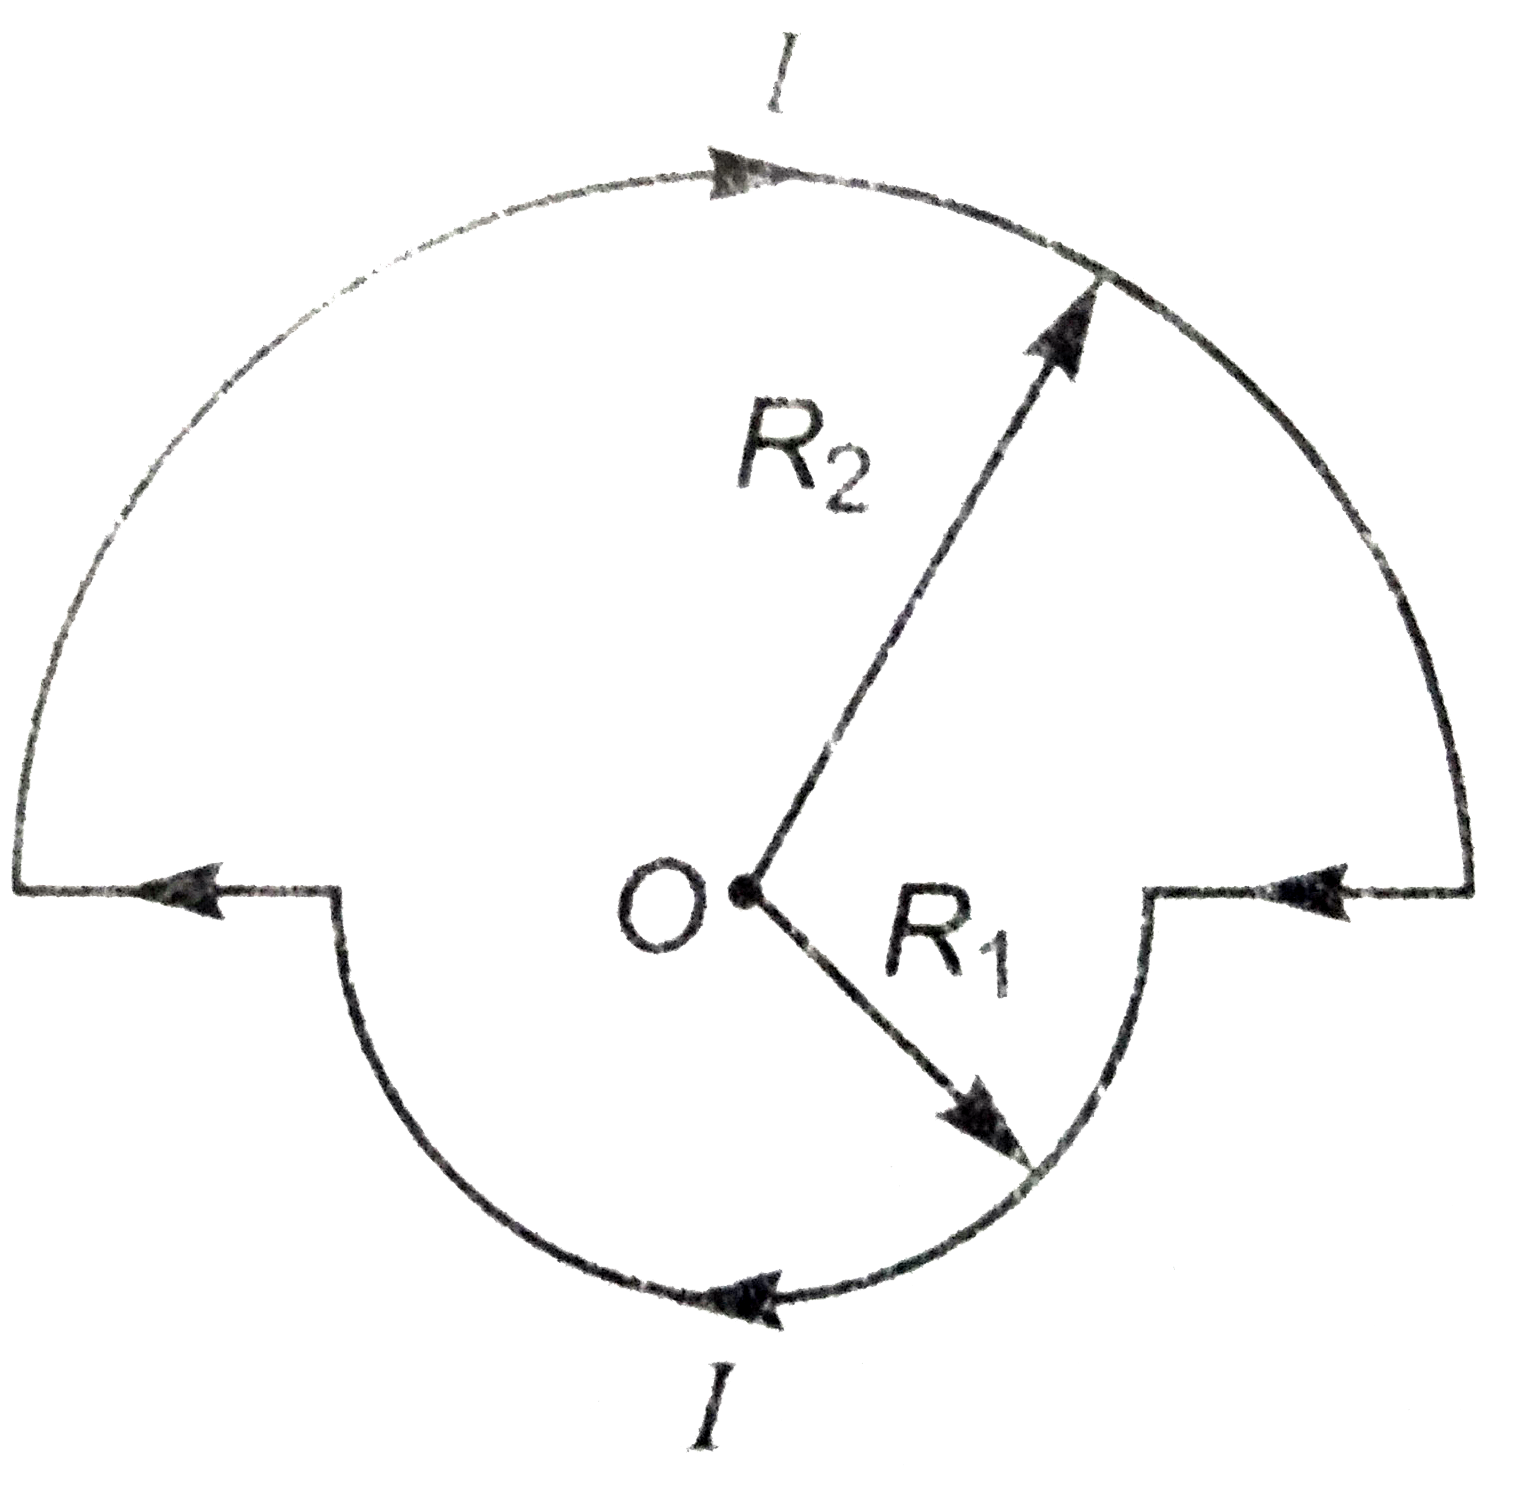 संलगन चित्र में प्रदर्शित मुड़े तार में I एम्पेयर धारा हैं। बिंदु O पर चुंबकीय क्षेत्र का मान व दिशा ज्ञात कीजिये।